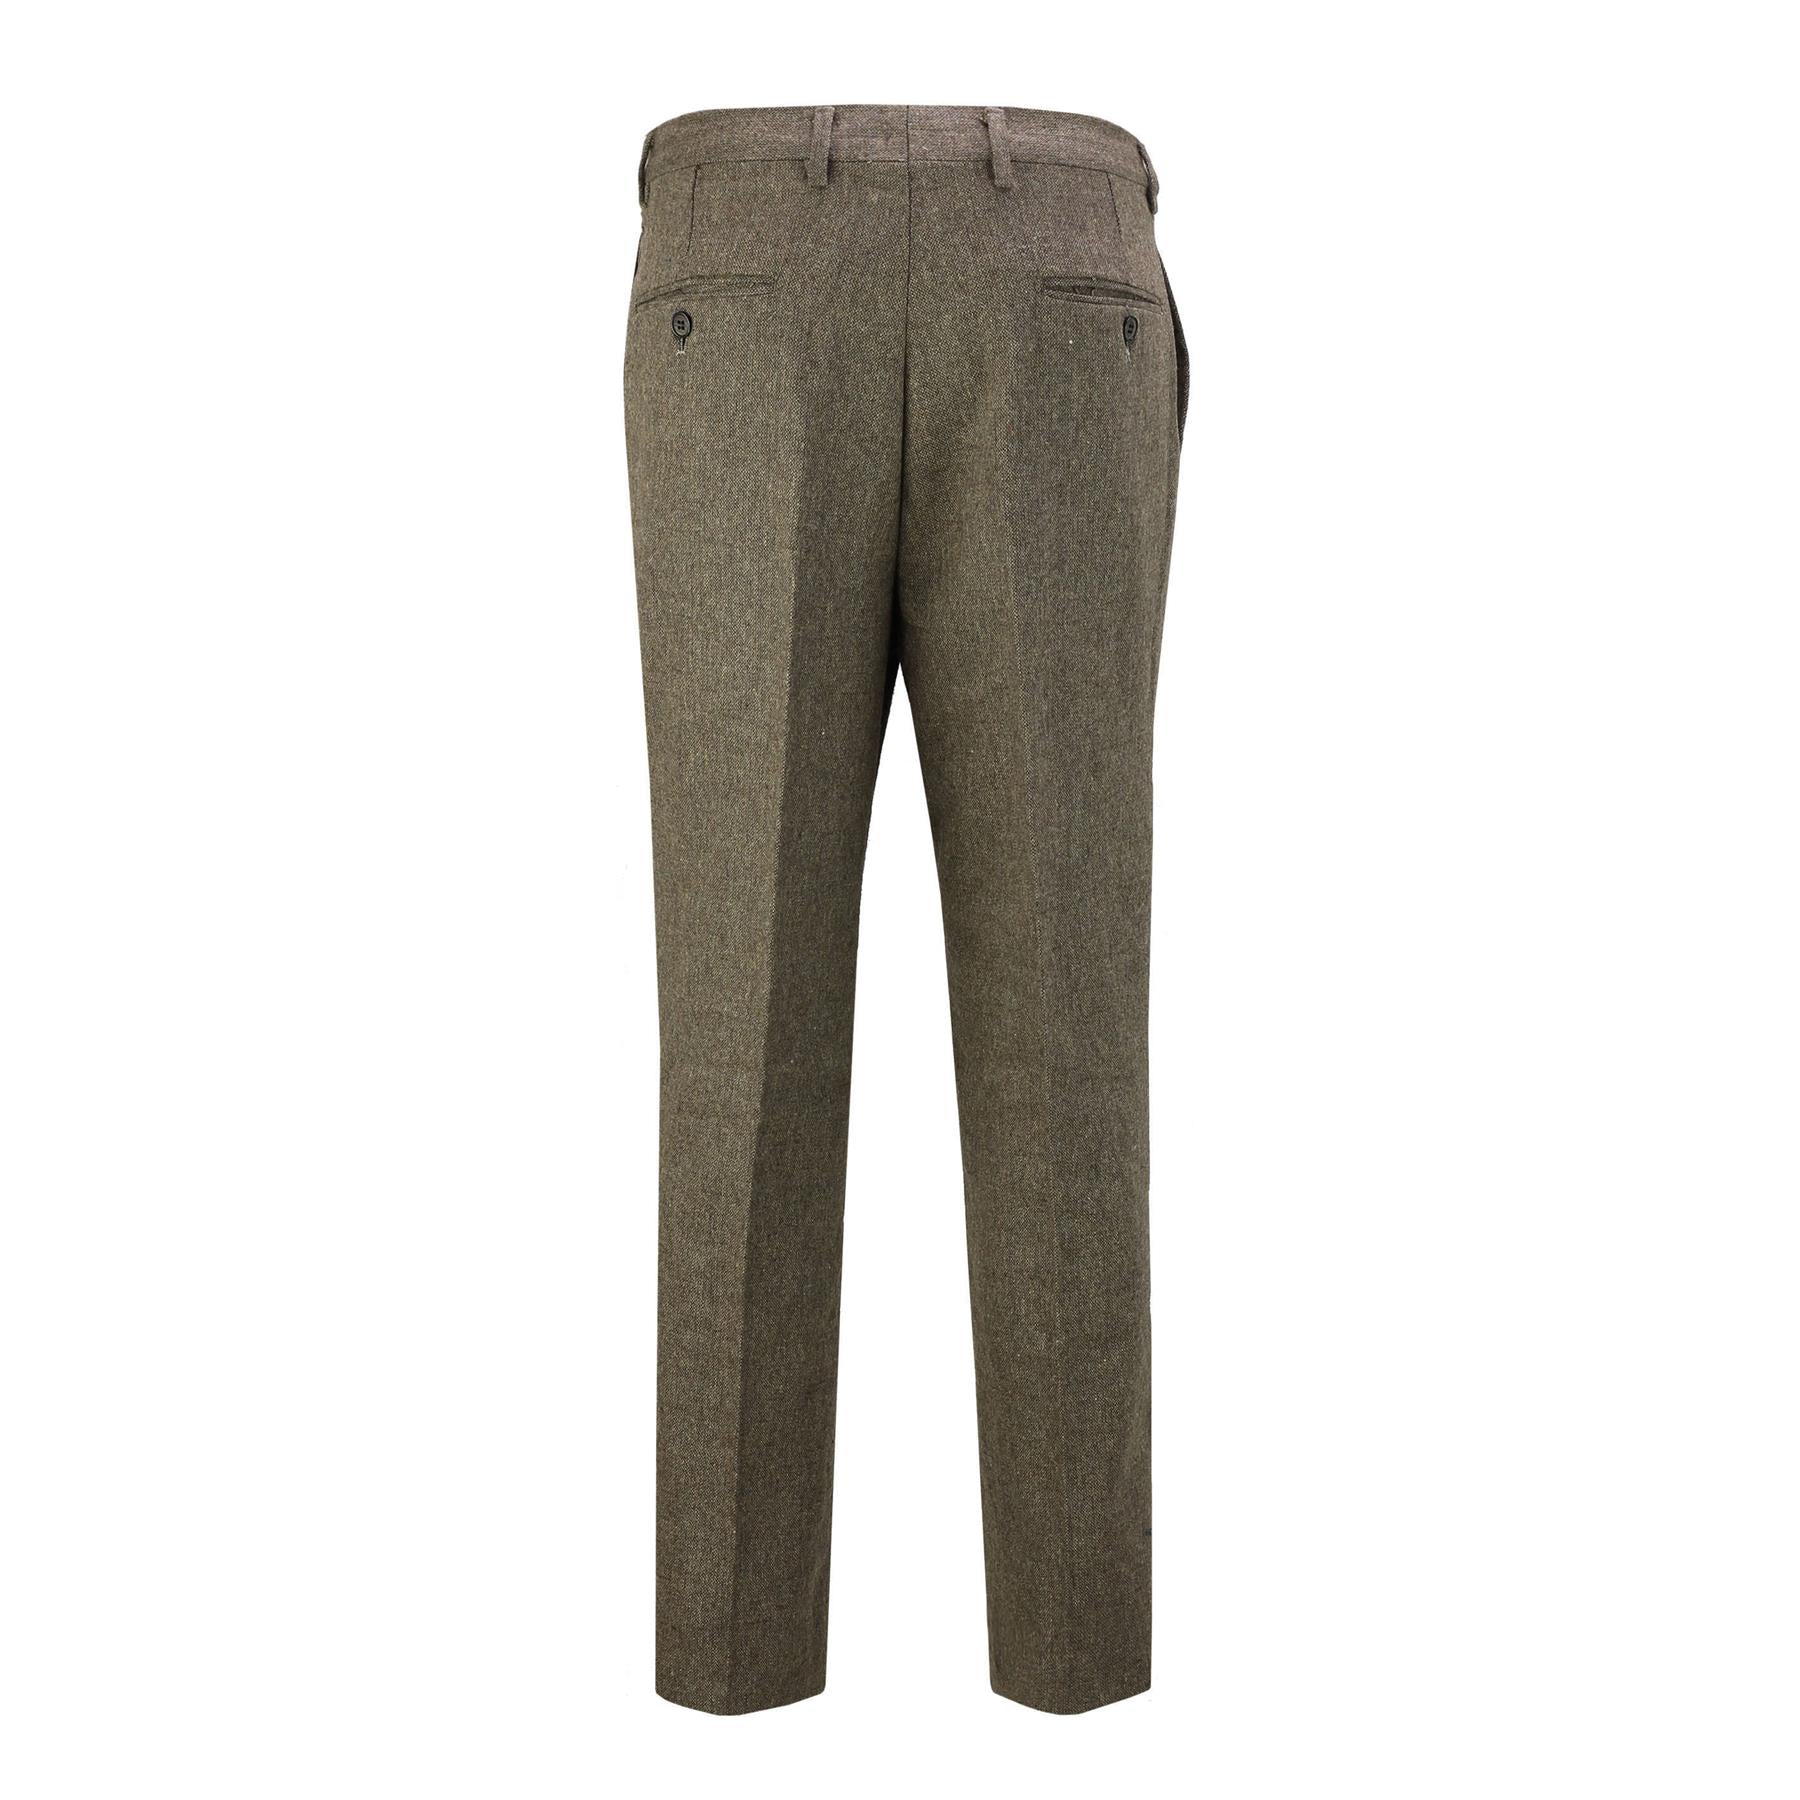 Tan Brown Tweed Suit Trouser - X6058-4